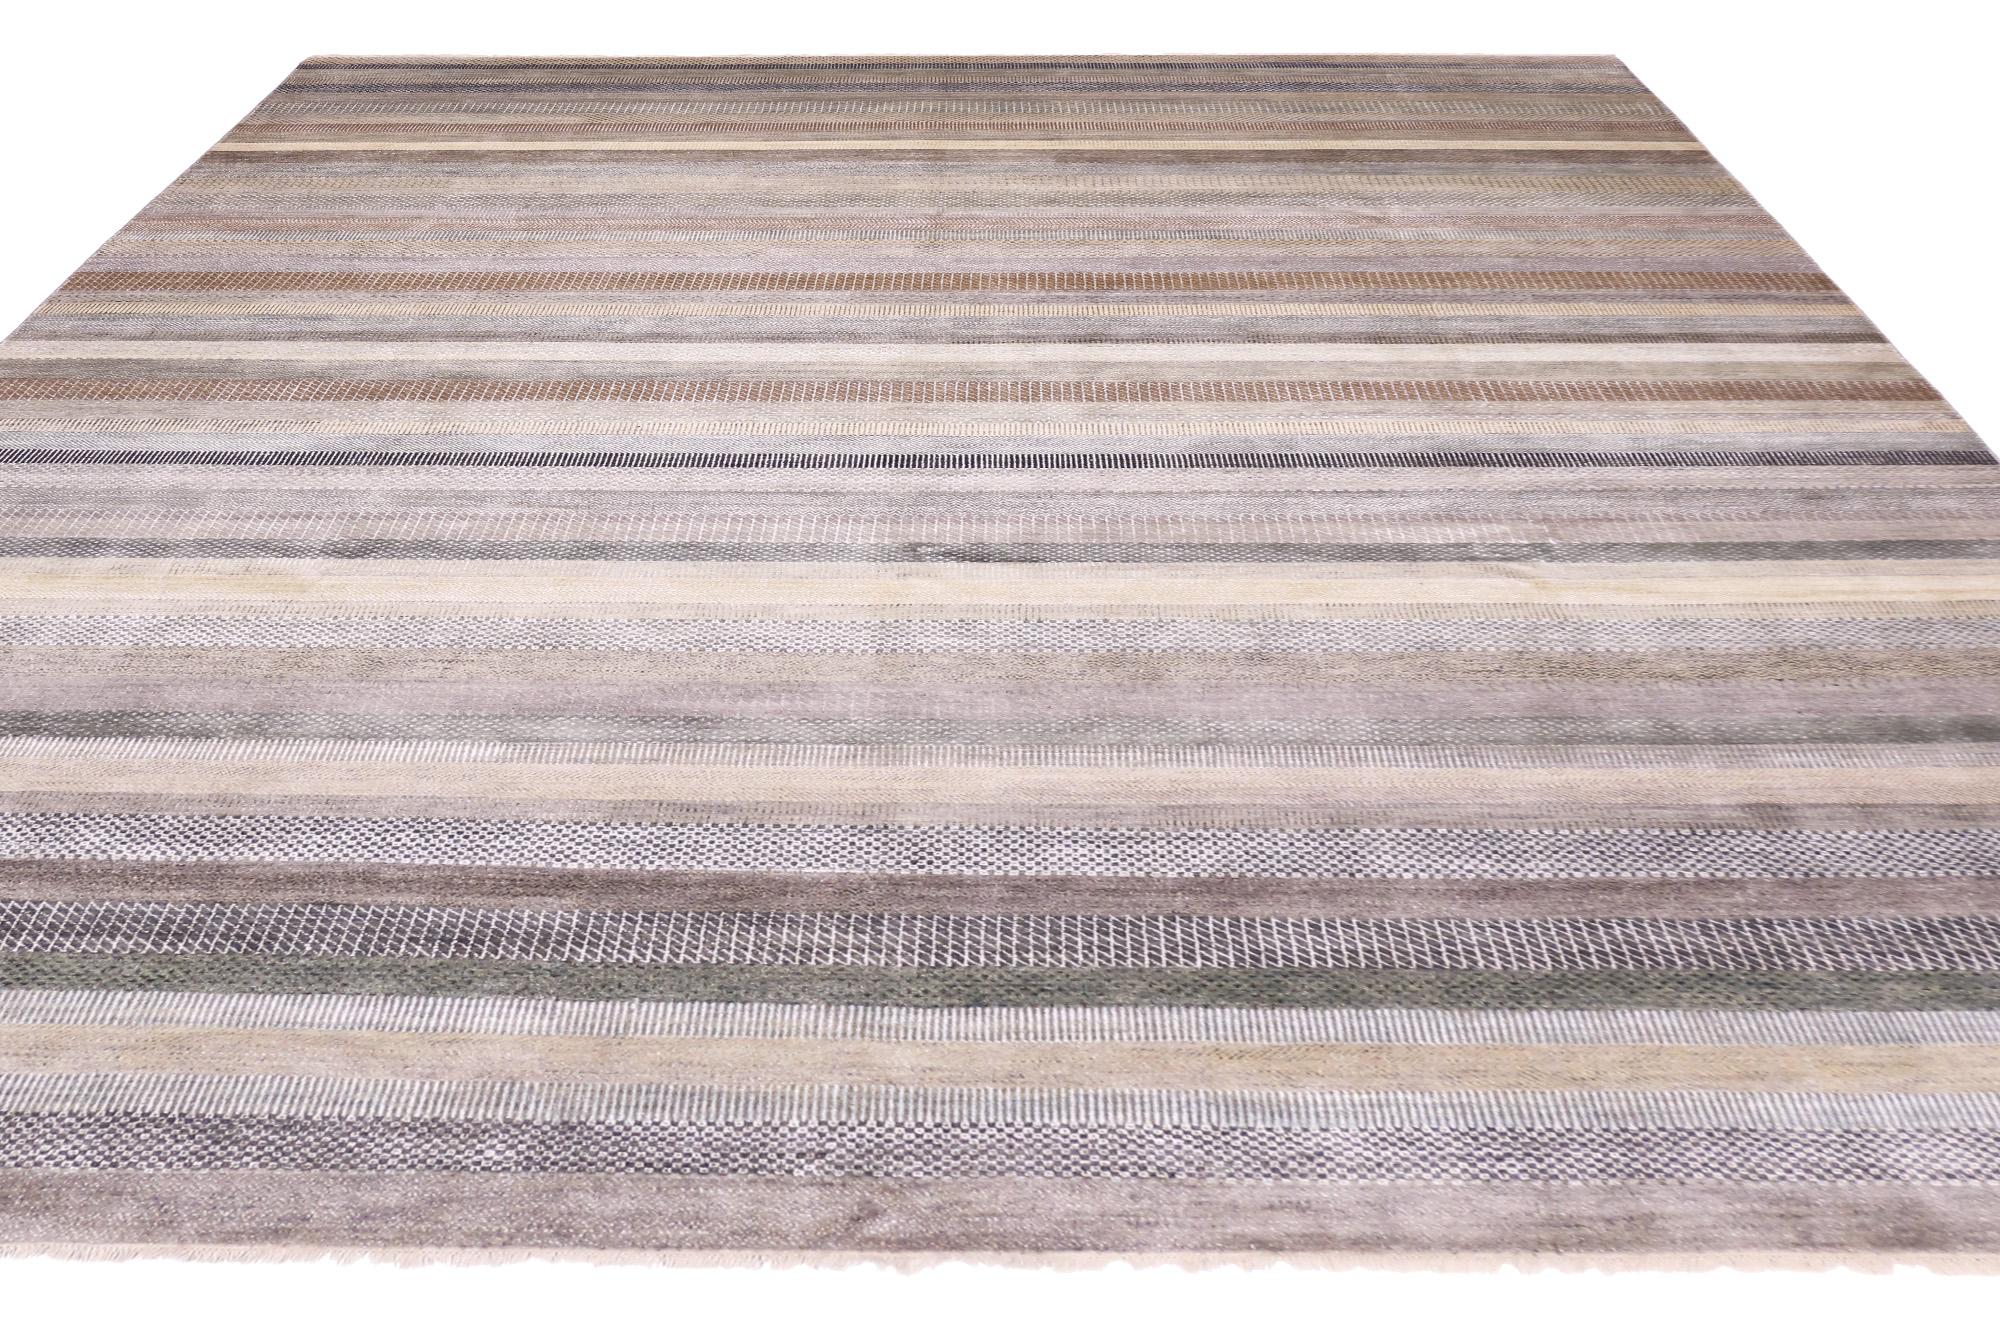 30013 New Transitional Striped Area Rug, 09'10 x 14'01. Les tapis indiens transitionnels en laine et en soie sont des tapis artisanaux exquis qui associent les techniques de tissage indiennes traditionnelles à des éléments de design contemporains.